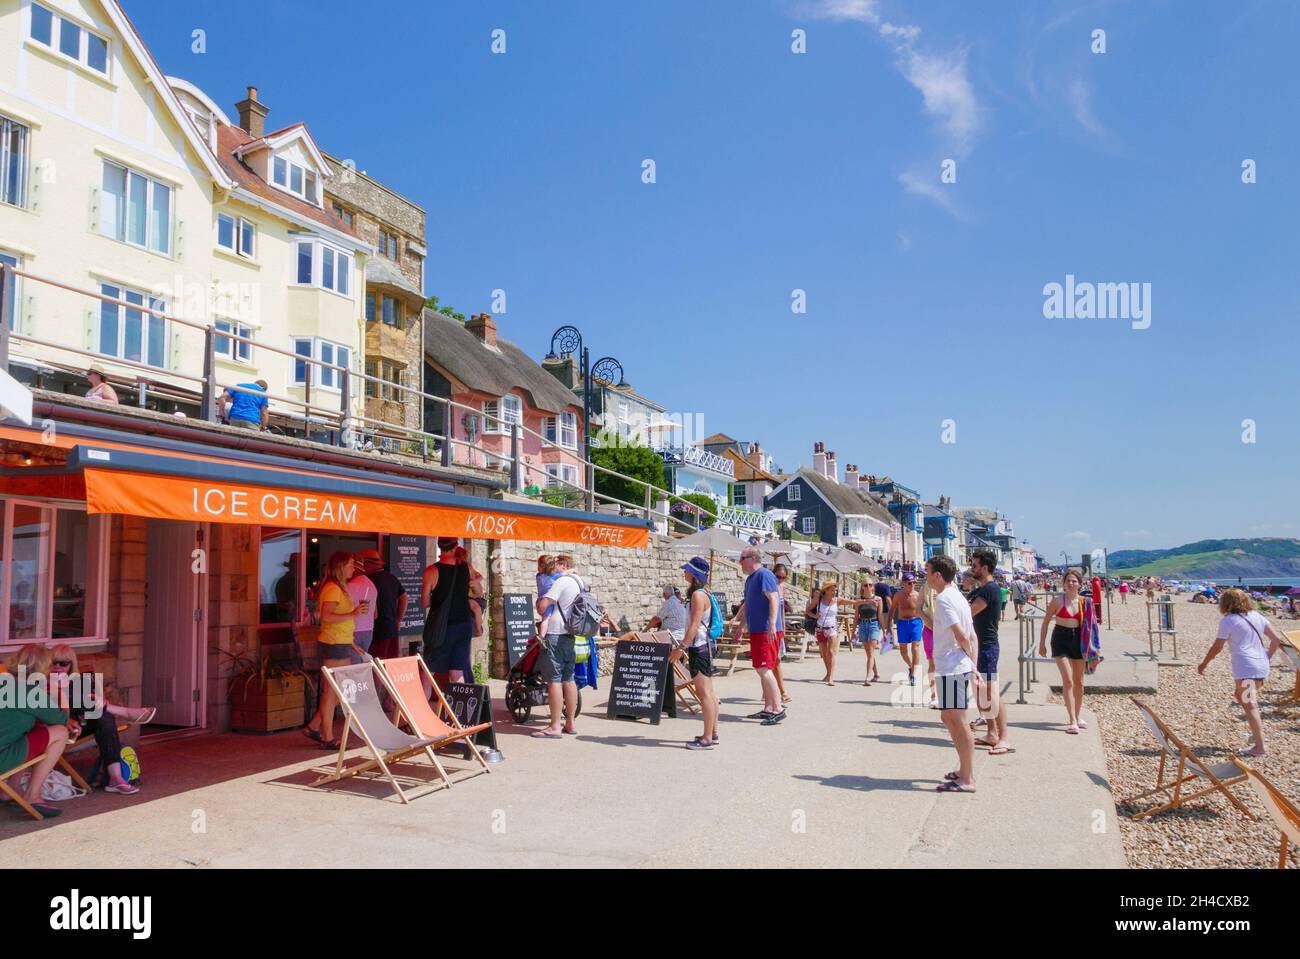 Persone che si accodano per gelato in un chiosco gelato caffè sul lungomare Marine Parade con vista sulla spiaggia di sabbia a Lyme Regis Dorset Inghilterra GB Europa Foto Stock